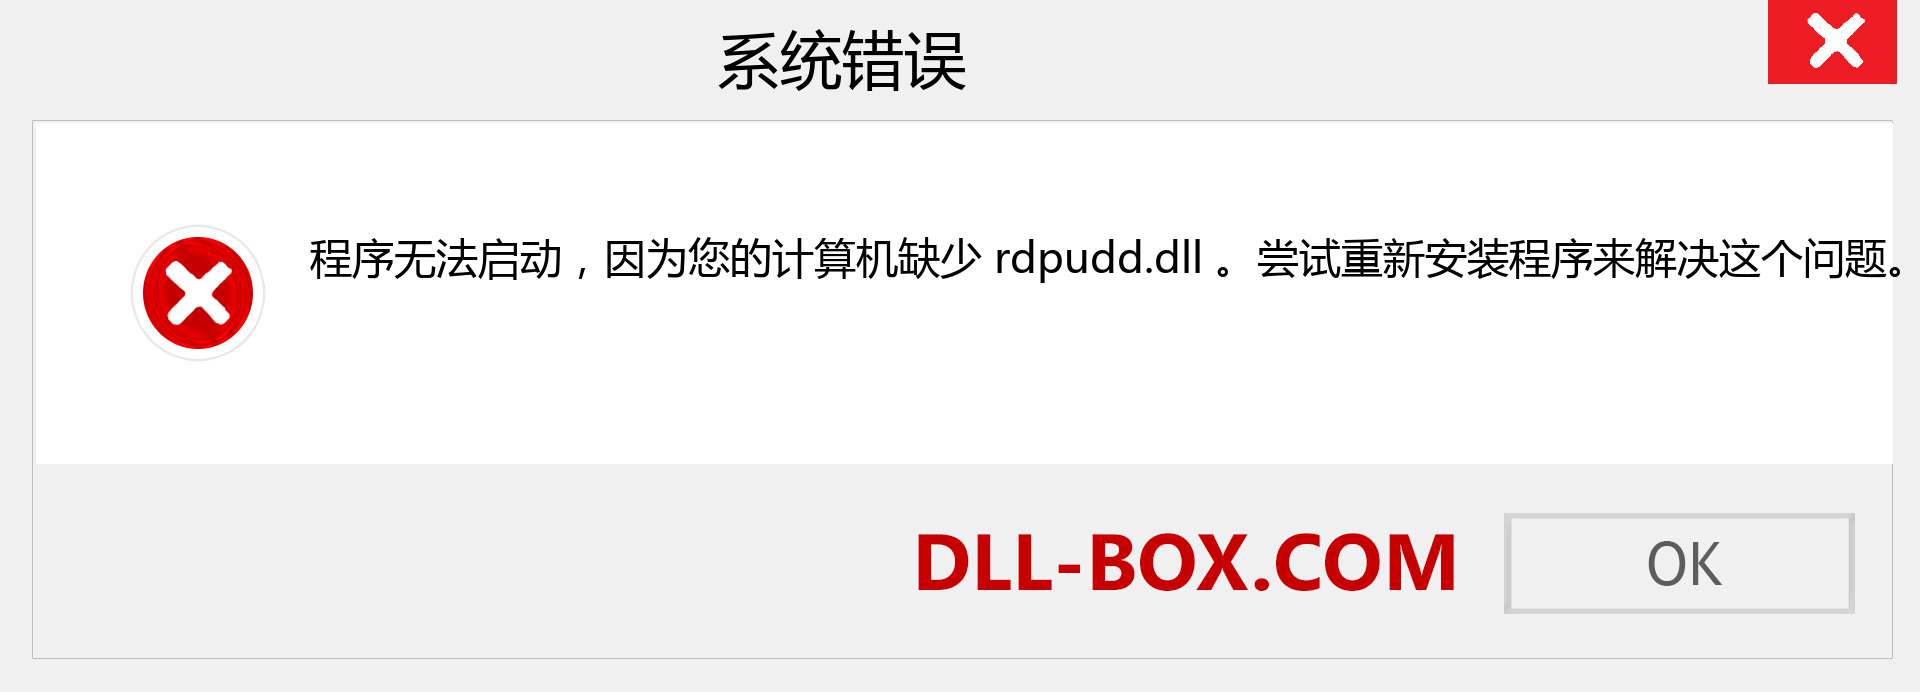 rdpudd.dll 文件丢失？。 适用于 Windows 7、8、10 的下载 - 修复 Windows、照片、图像上的 rdpudd dll 丢失错误